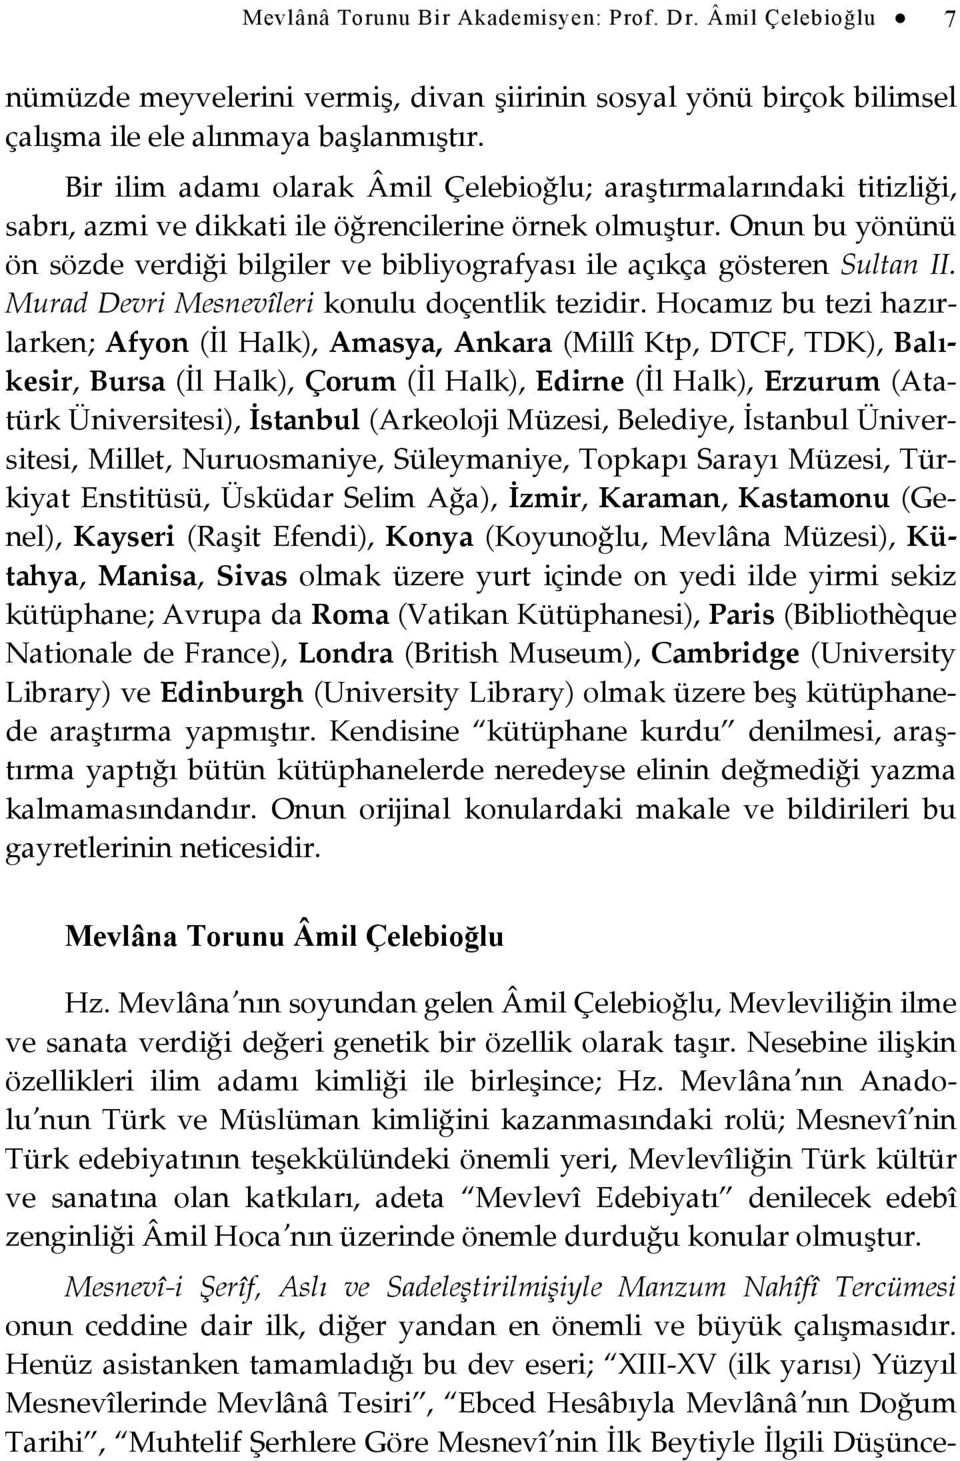 Onun bu yönünü ön sözde verdiği bilgiler ve bibliyografyası ile açıkça gösteren Sultan II. Murad Devri Mesnevîleri konulu doçentlik tezidir.